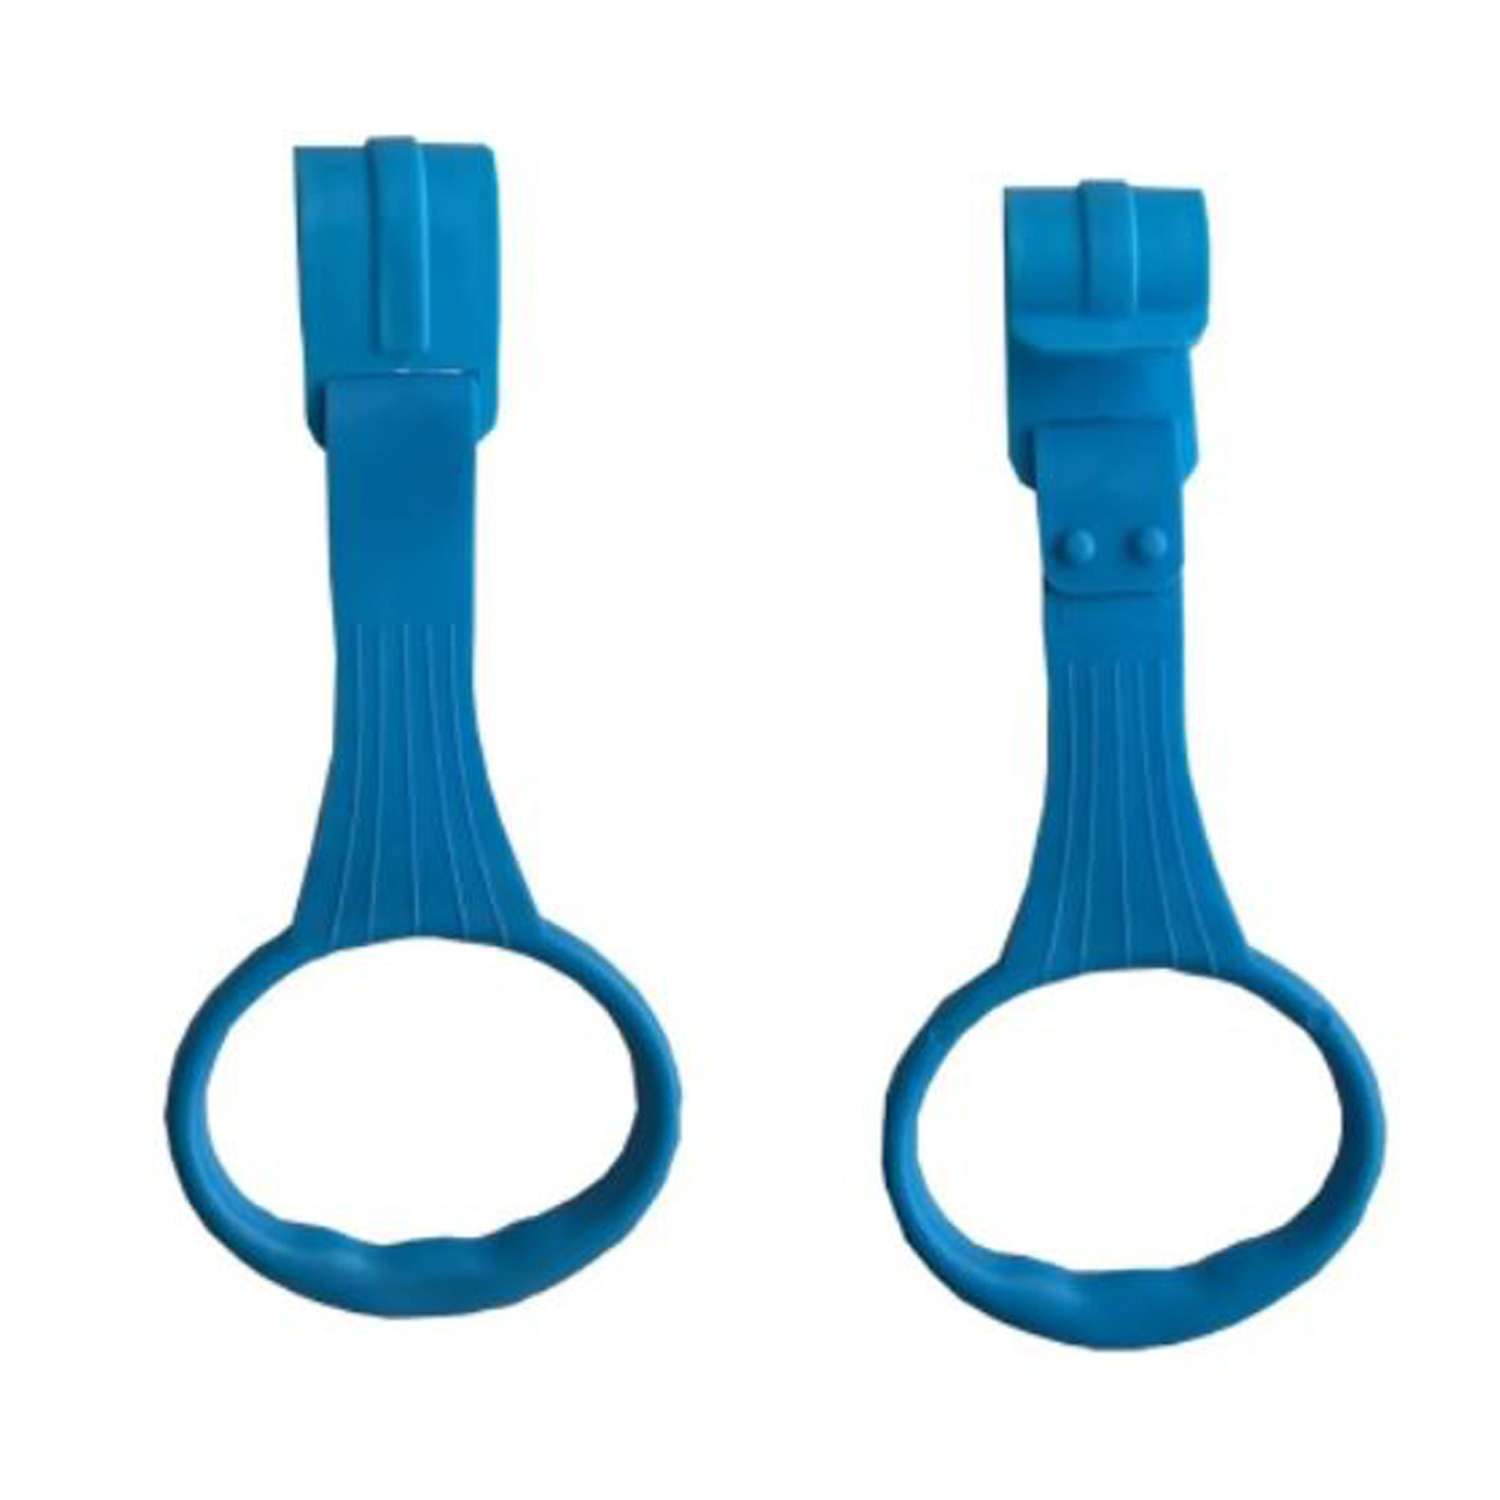 Пластиковые кольца Floopsi для манежа или барьера подвесные 2 шт kolso-2pc-blue - фото 1